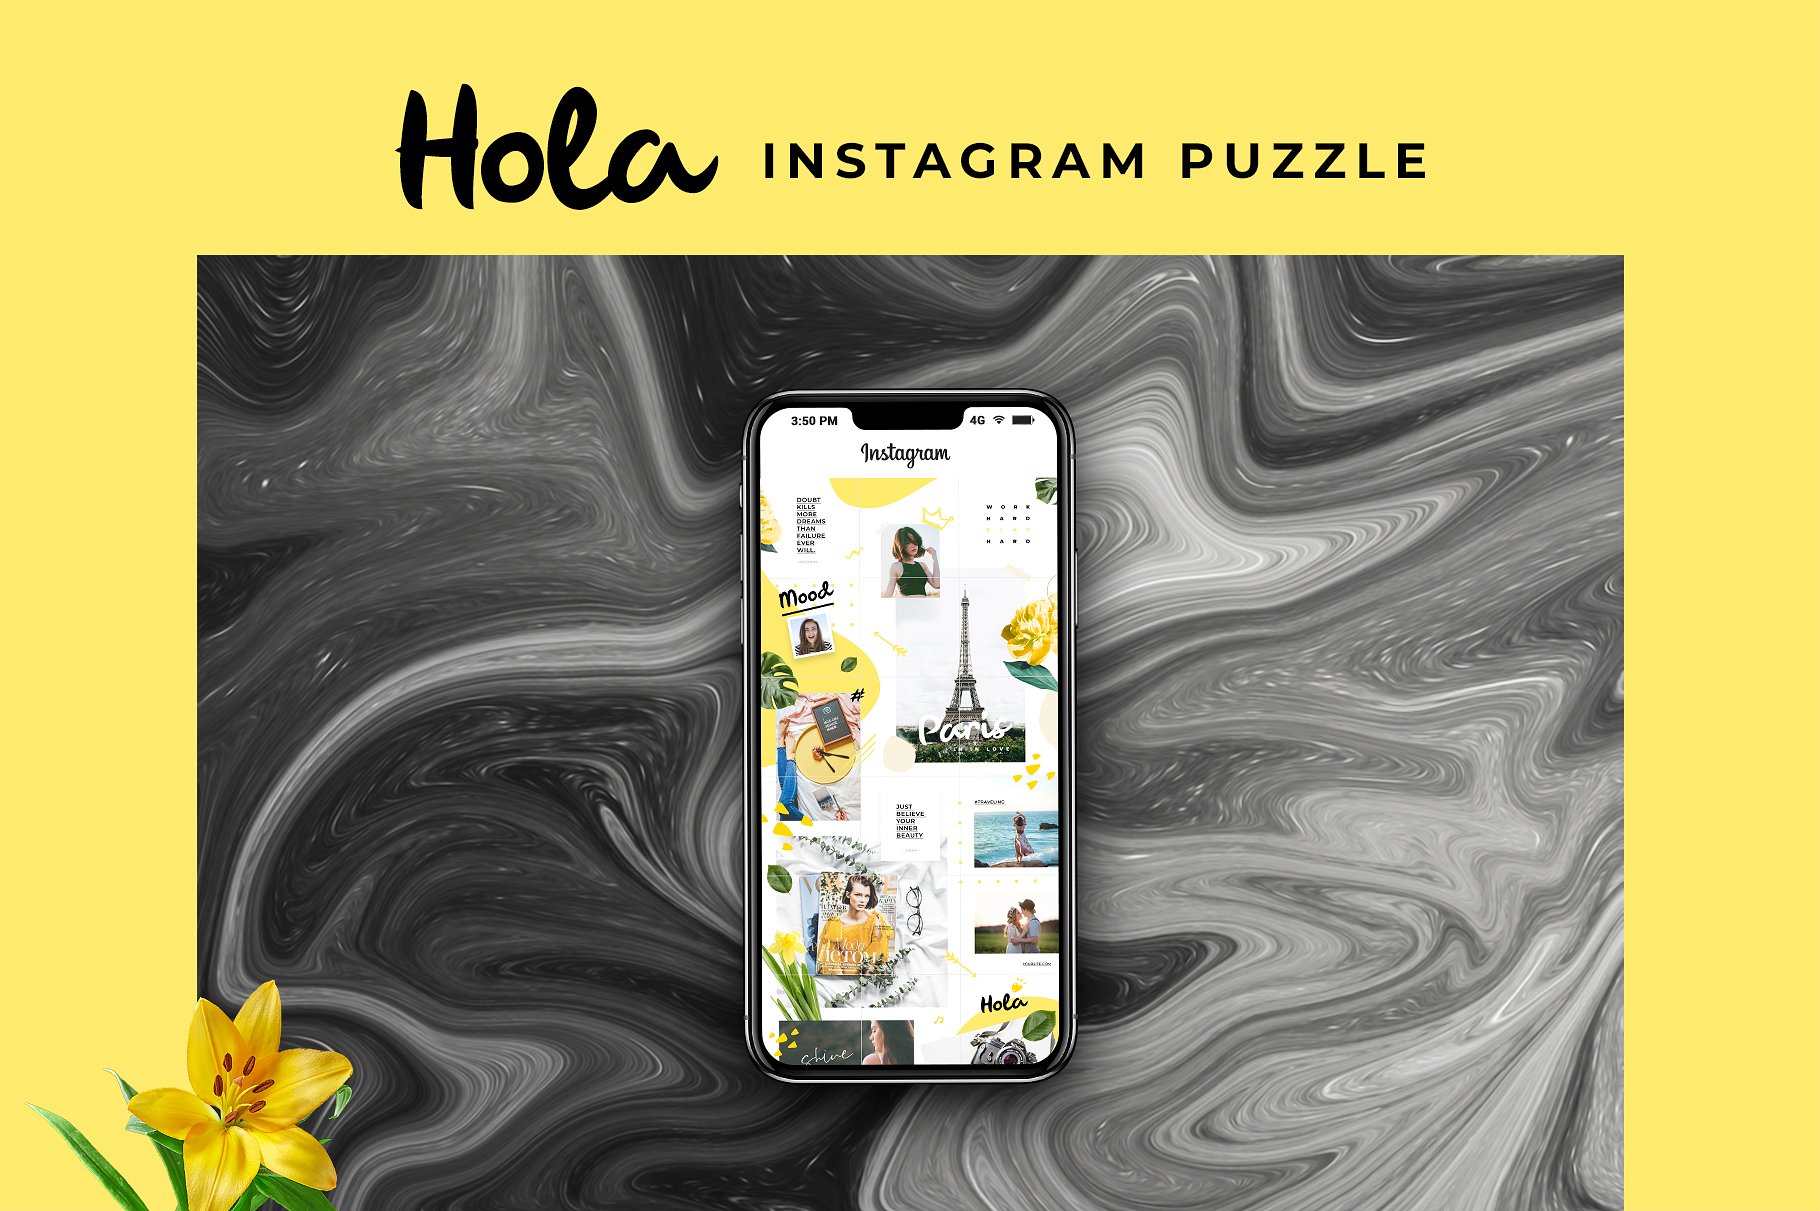 时尚极简的Instagram社交媒体模板16图库精选 Instagram Puzzle – Hola [psd]插图(2)